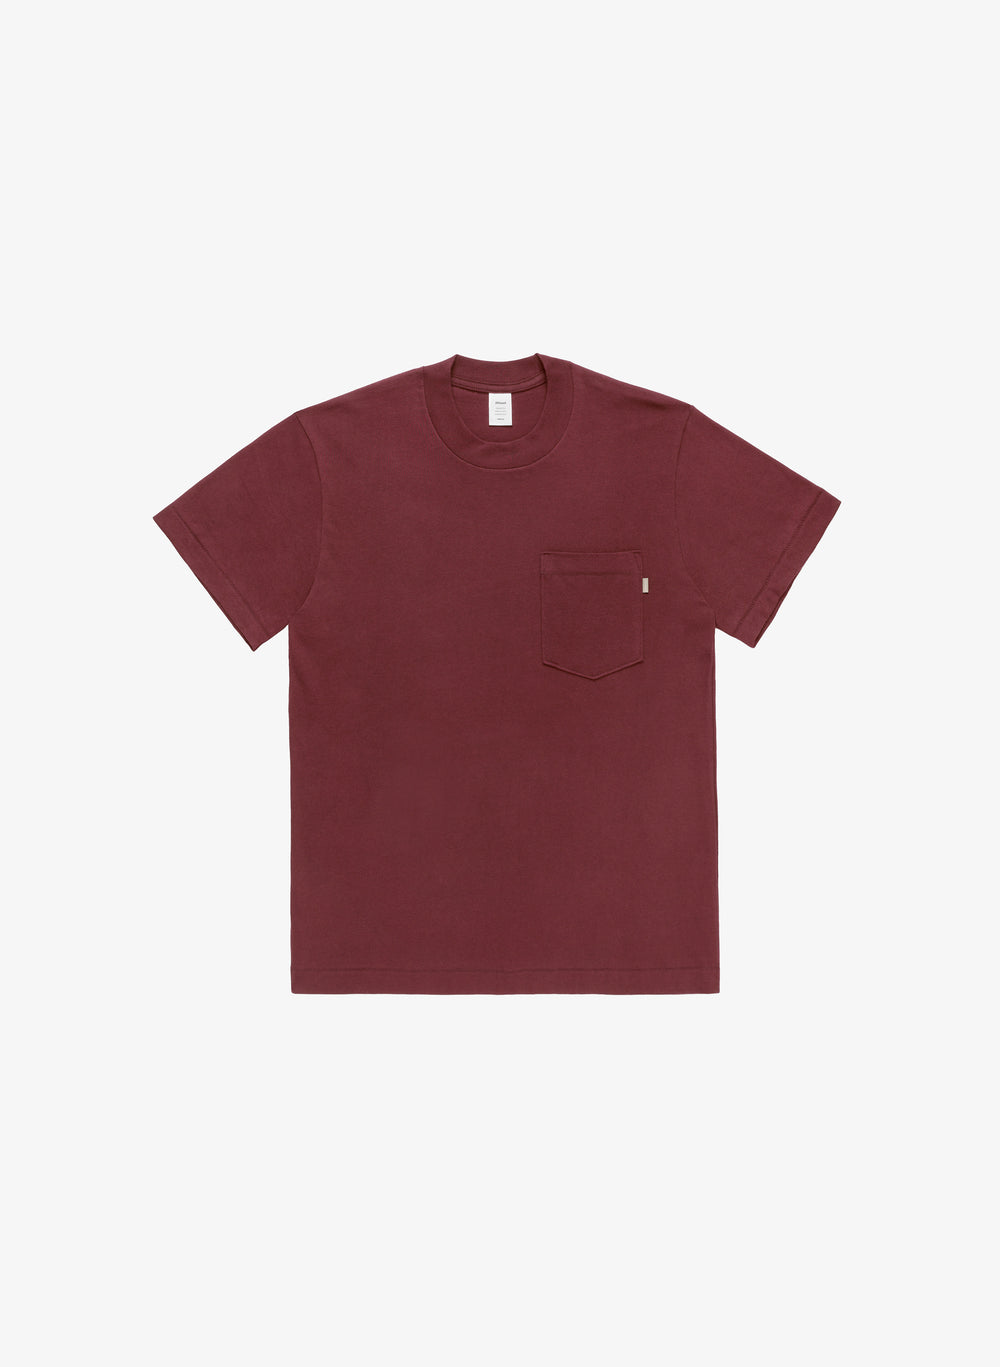 J90 T-Shirt Pocket - Burgundy